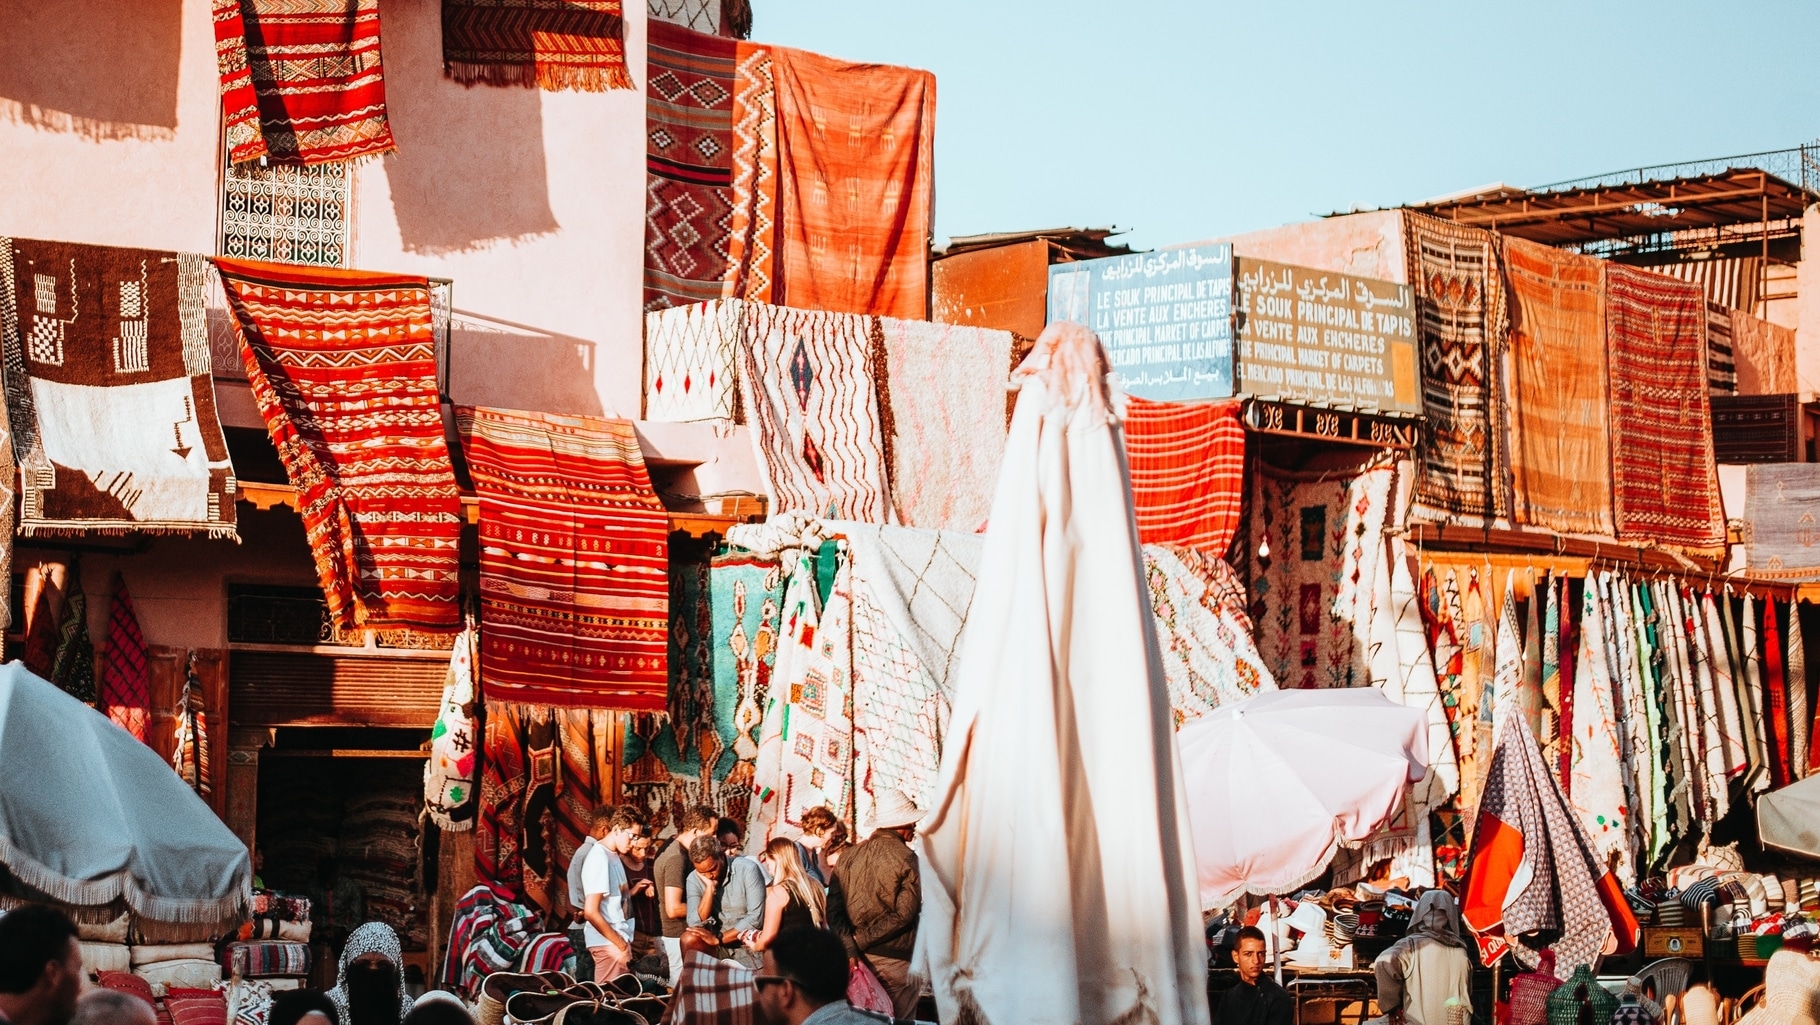 Cosa comprare in Marocco: 10 articoli da comprare in Marocco